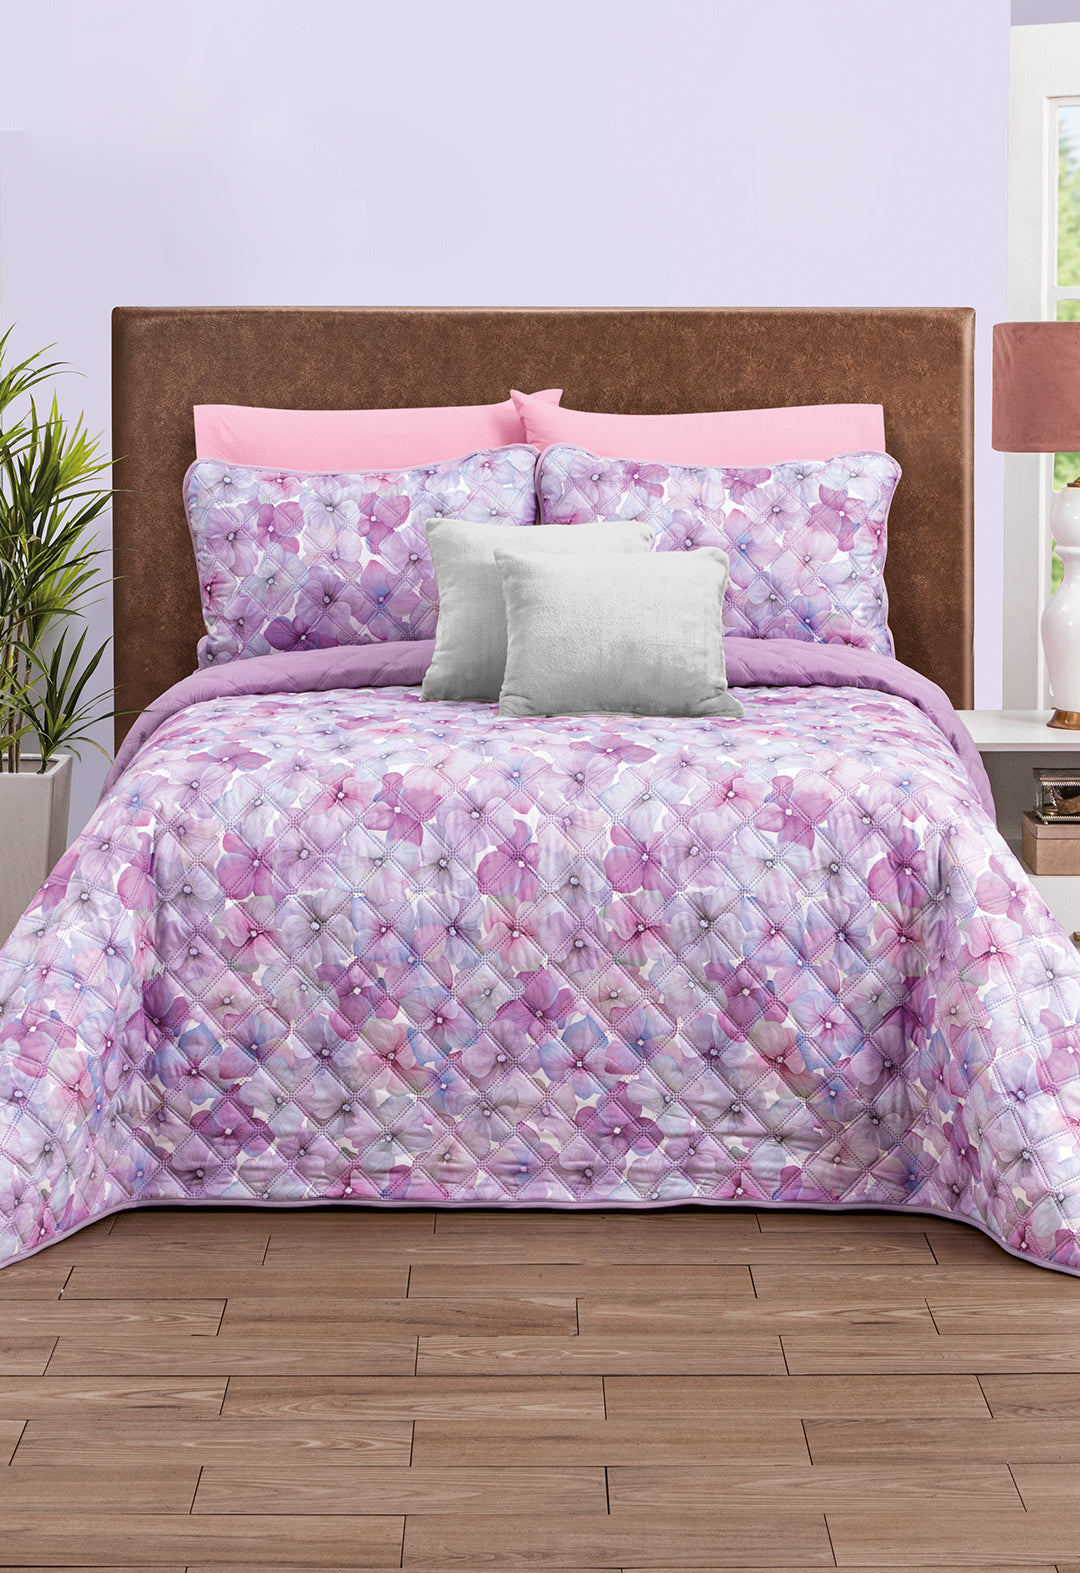 El Juego de Edredón Lily presenta una encantadora combinación de tonos lila y un exquisito diseño floral.